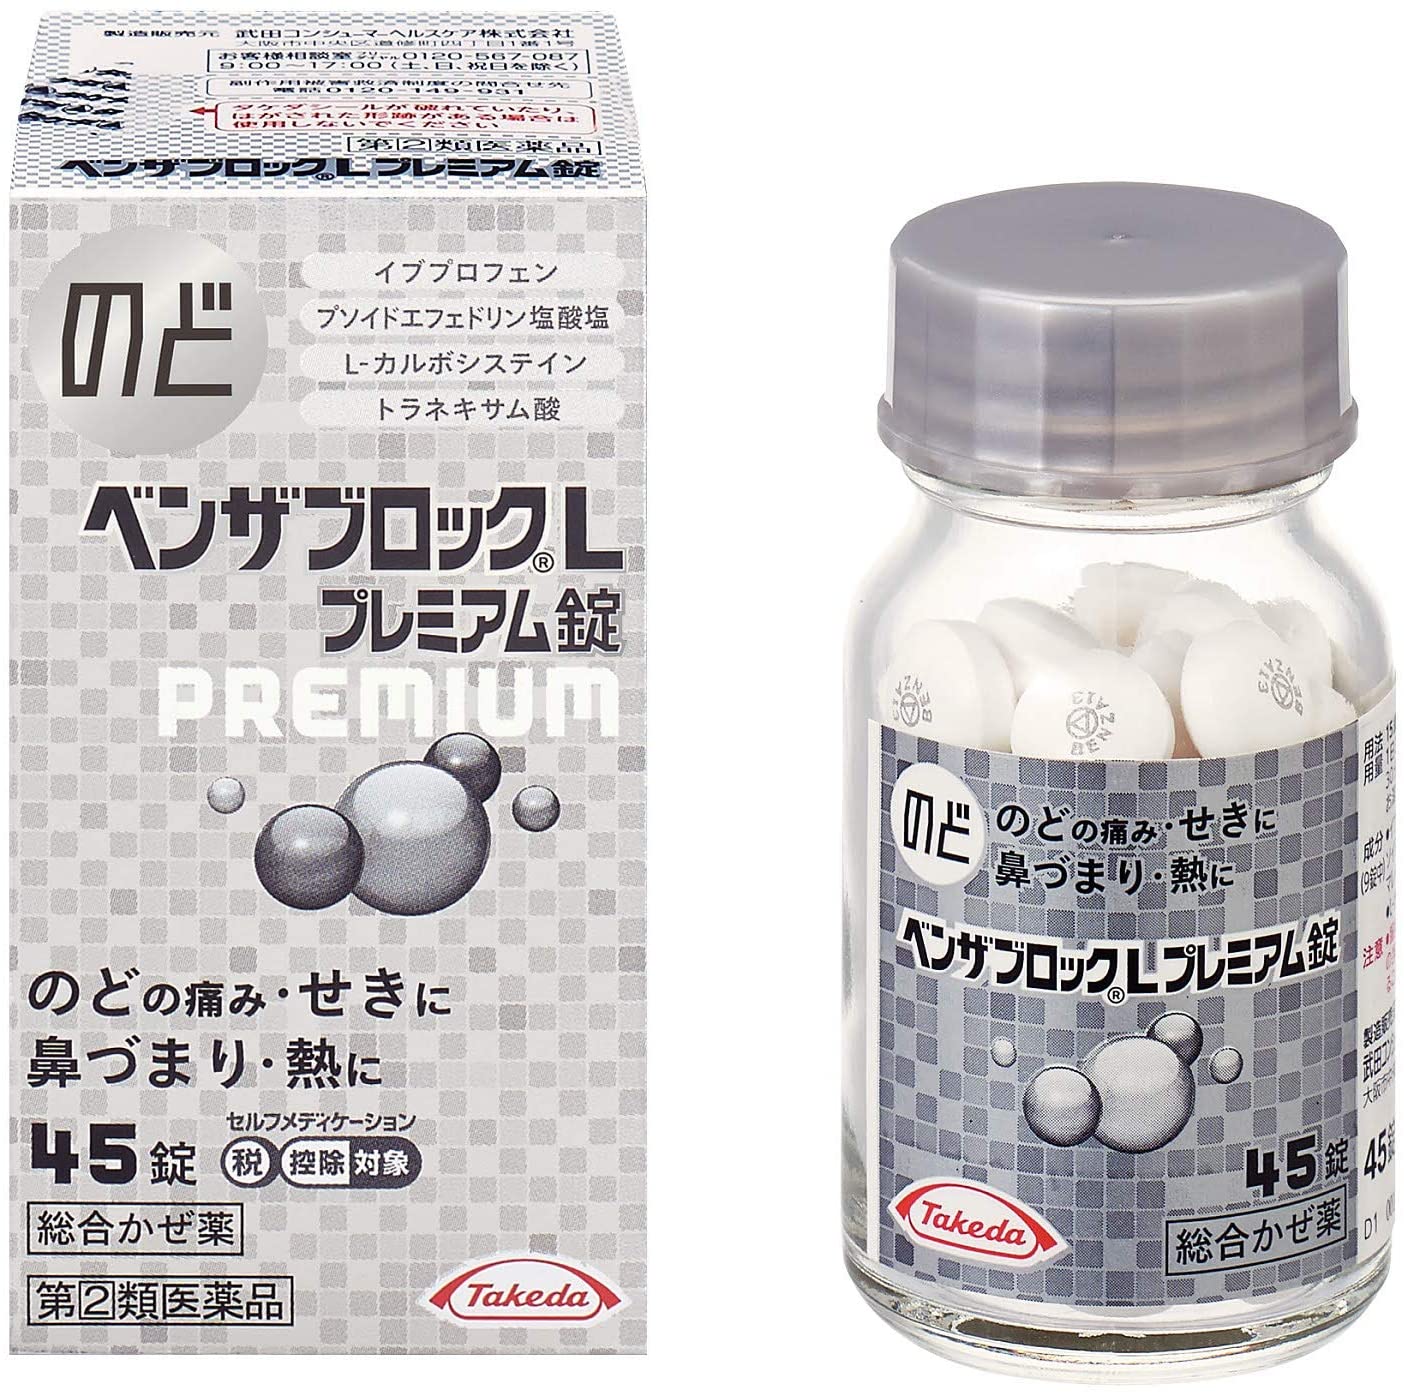 のどの痛み 発熱などを緩和 ベンザブロック ４５Ｔ 日本全国 送料無料 ベンザブロックＬプレミアム錠 品質検査済